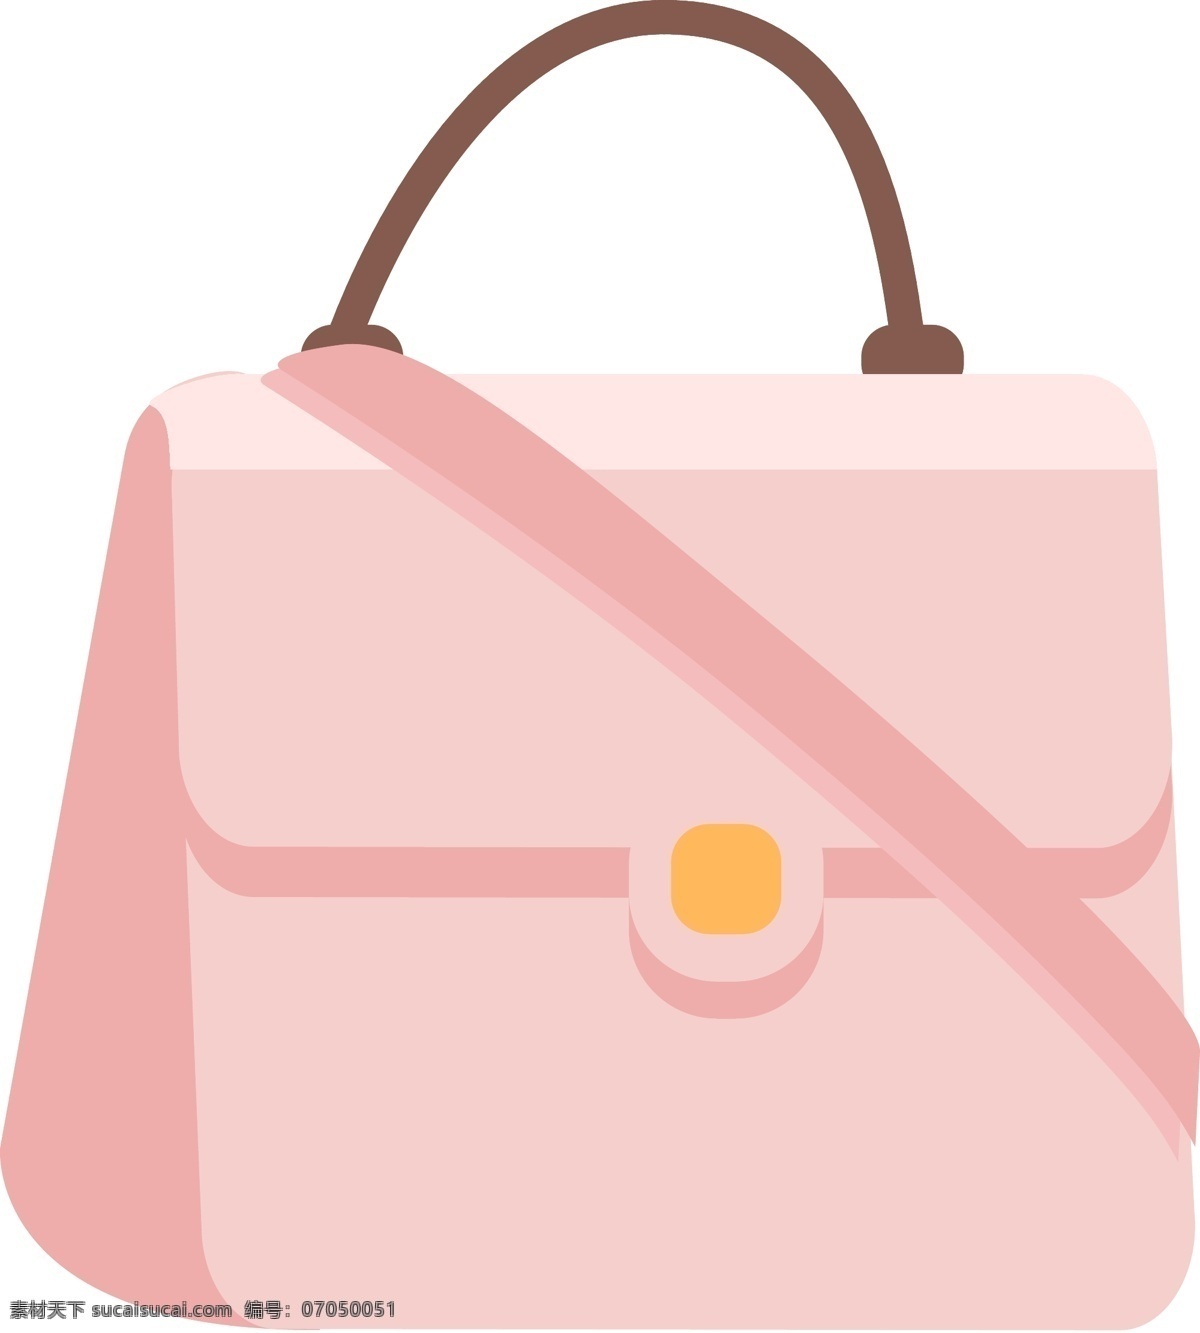 粉色 女生 斜 挎包 插画 女士包包 潮流包 名牌包 女款包 女生手提包 粉色手提包